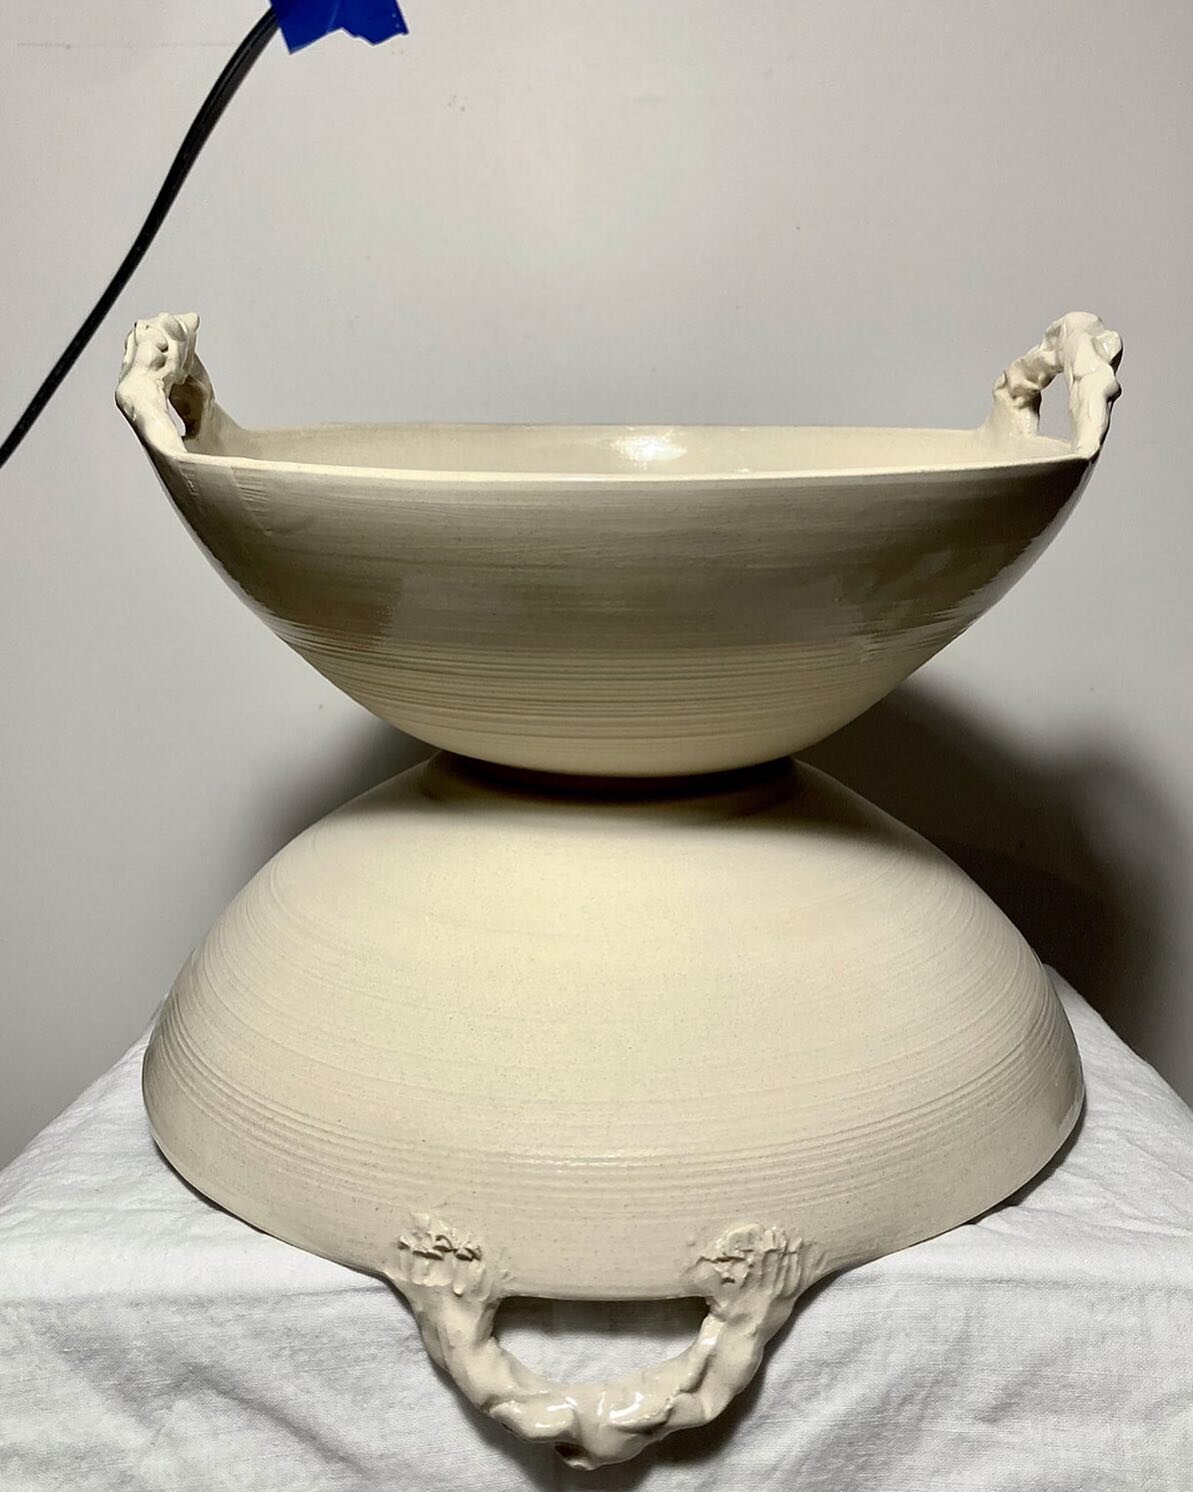 Deux saladiers en gr&egrave;s aux anses moches
.
.
#ceramics #ceramique #cer&aacute;mica #claylove #instapottery #poterie #handmadeceramics